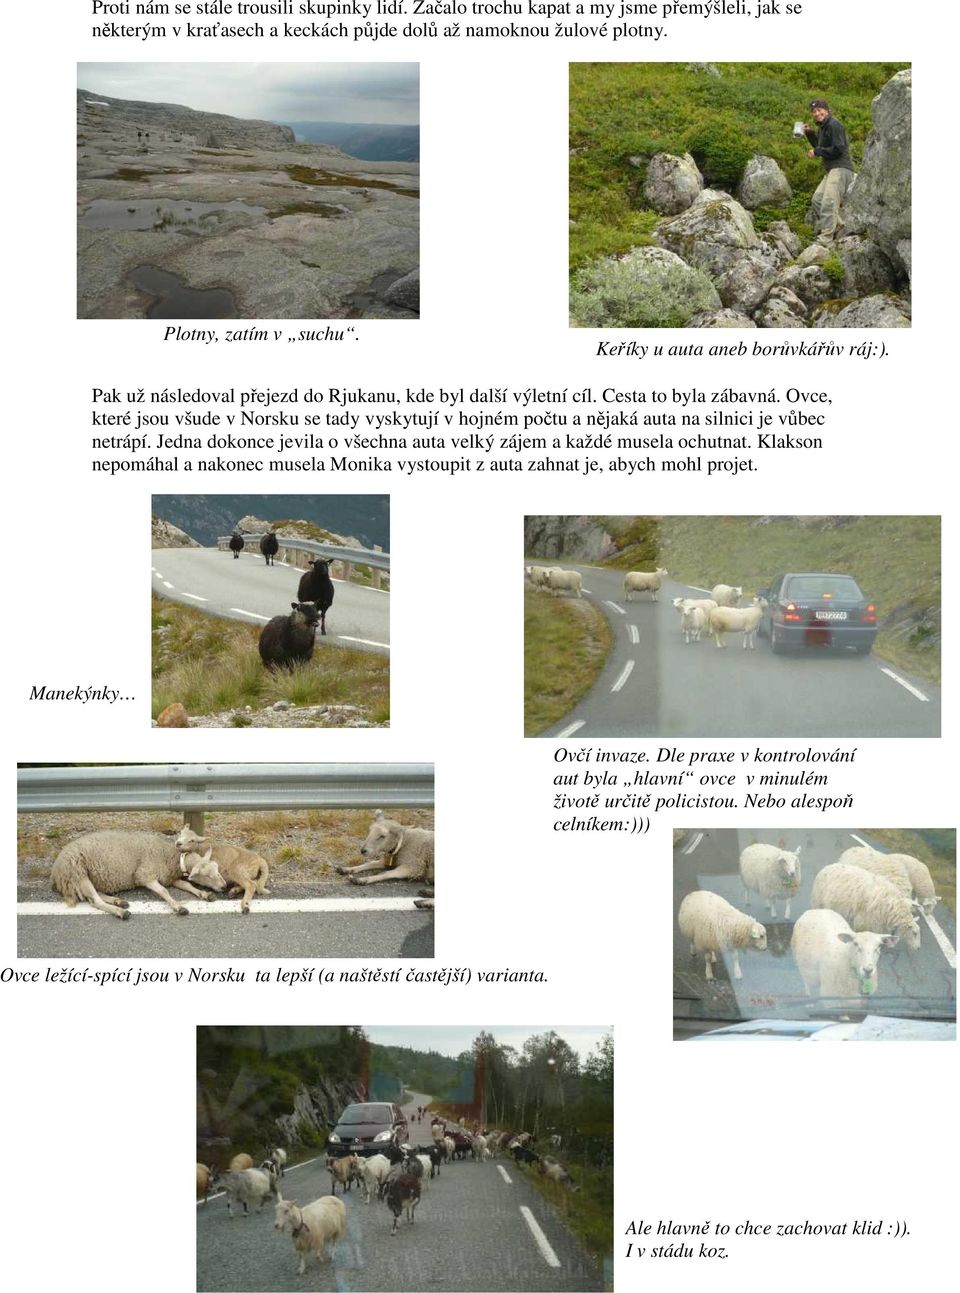 Ovce, které jsou všude v Norsku se tady vyskytují v hojném počtu a nějaká auta na silnici je vůbec netrápí. Jedna dokonce jevila o všechna auta velký zájem a každé musela ochutnat.